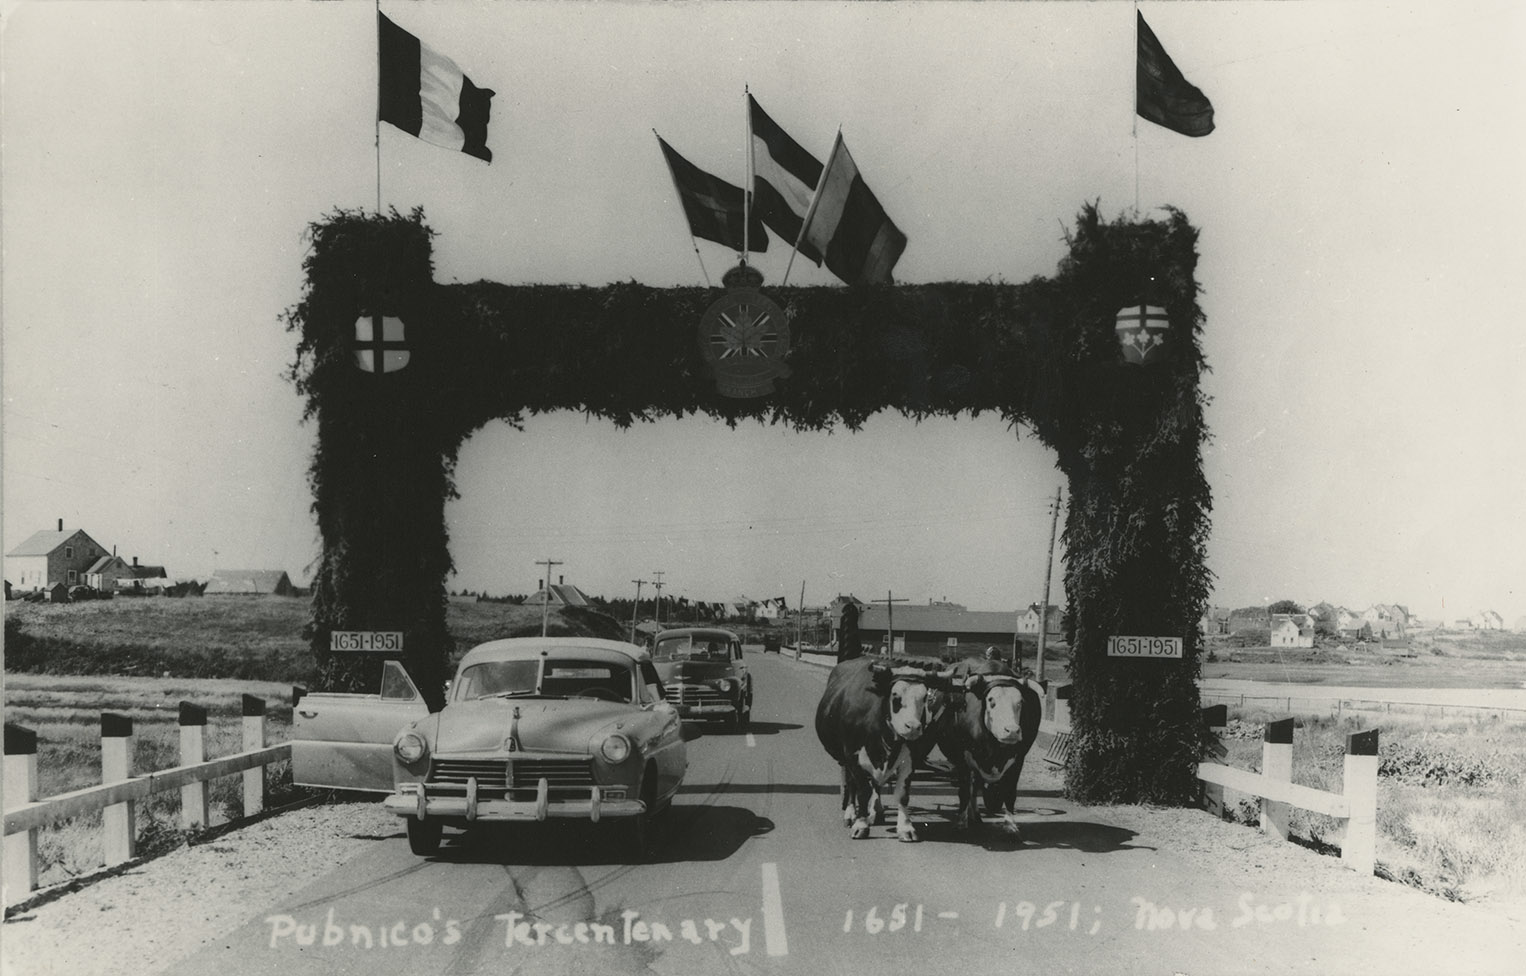 communityalbums - Pubnico Tercentenary Celebrations (1651–1951)
The arch at Pont du Marais bridge